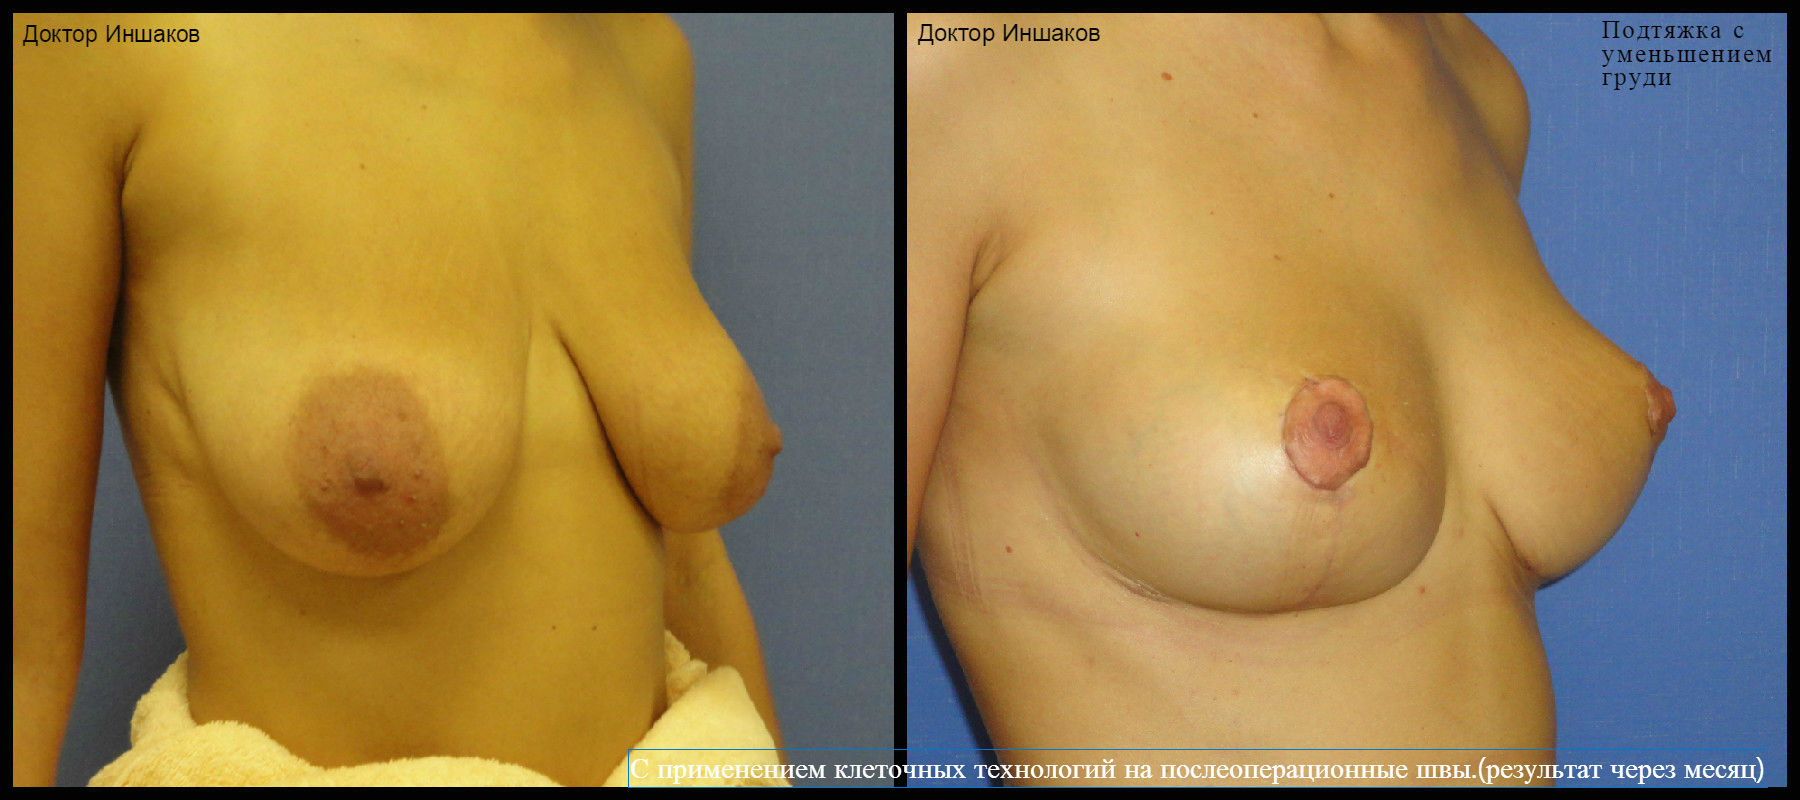 уменьшение размера груди операцией фото 81